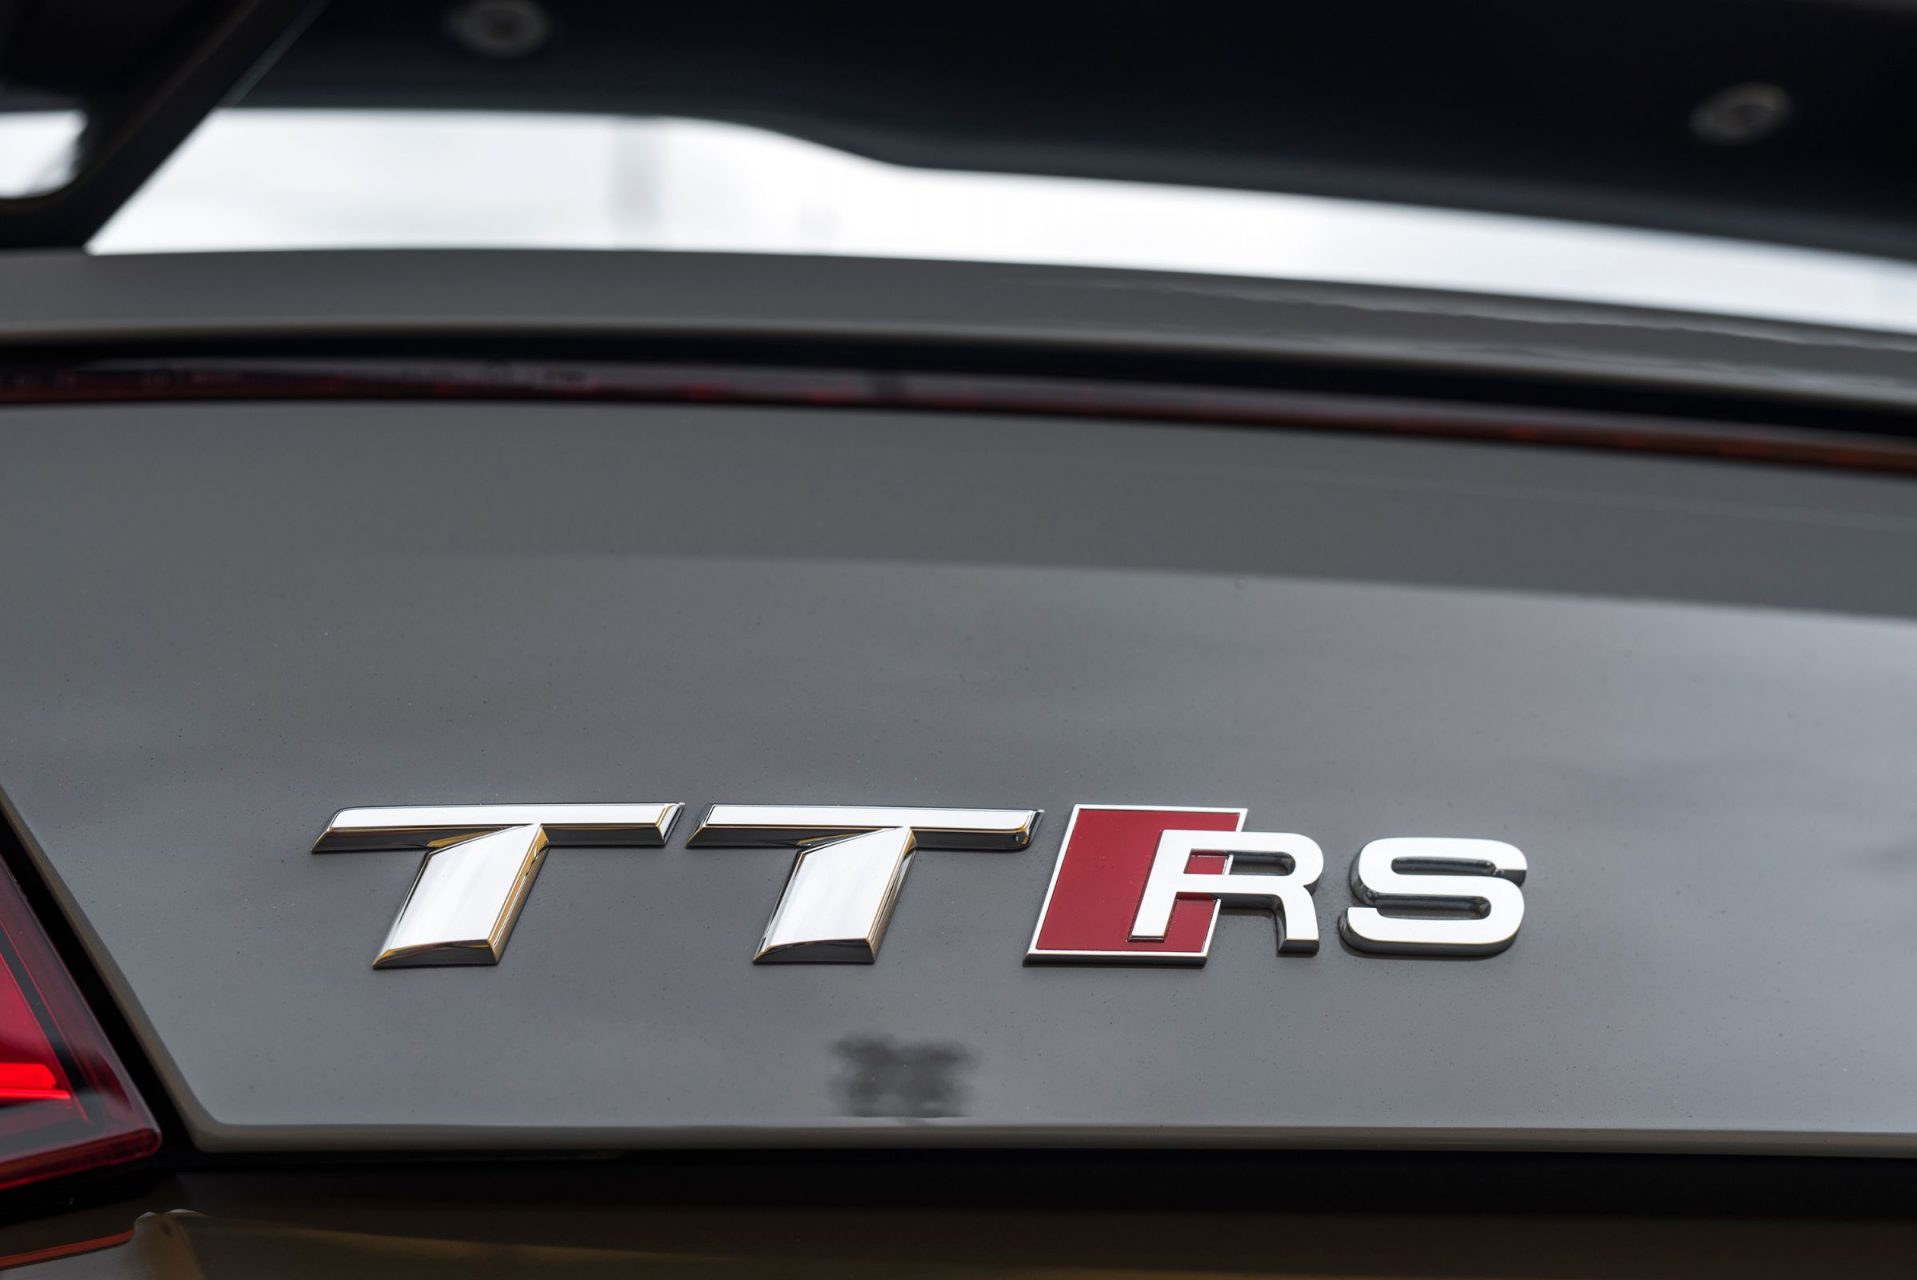 Confira detalhes do Audi TT RS 2018. Cupê esportivo equipado com motor turbo de 400 cv e tração integral tem preço de R$ 425 mil.